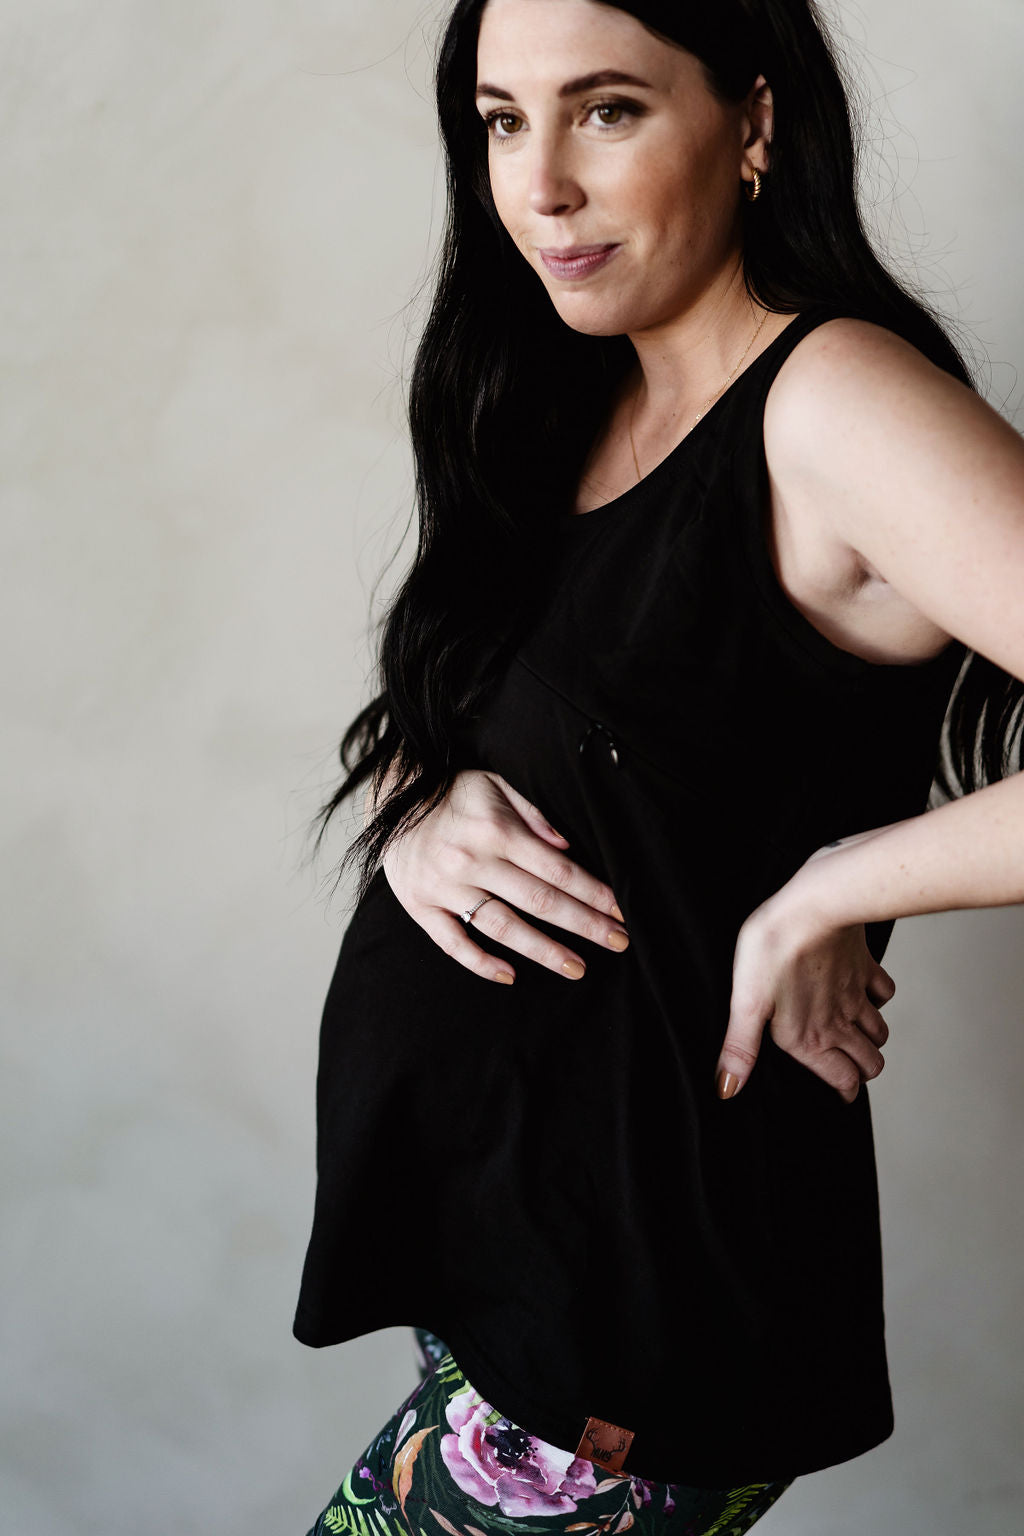 Camisole boyfriend noire 3 en 1 maternité, allaitement et post-partum Nine Clothing black tank top maternity breastfeeding postpartum